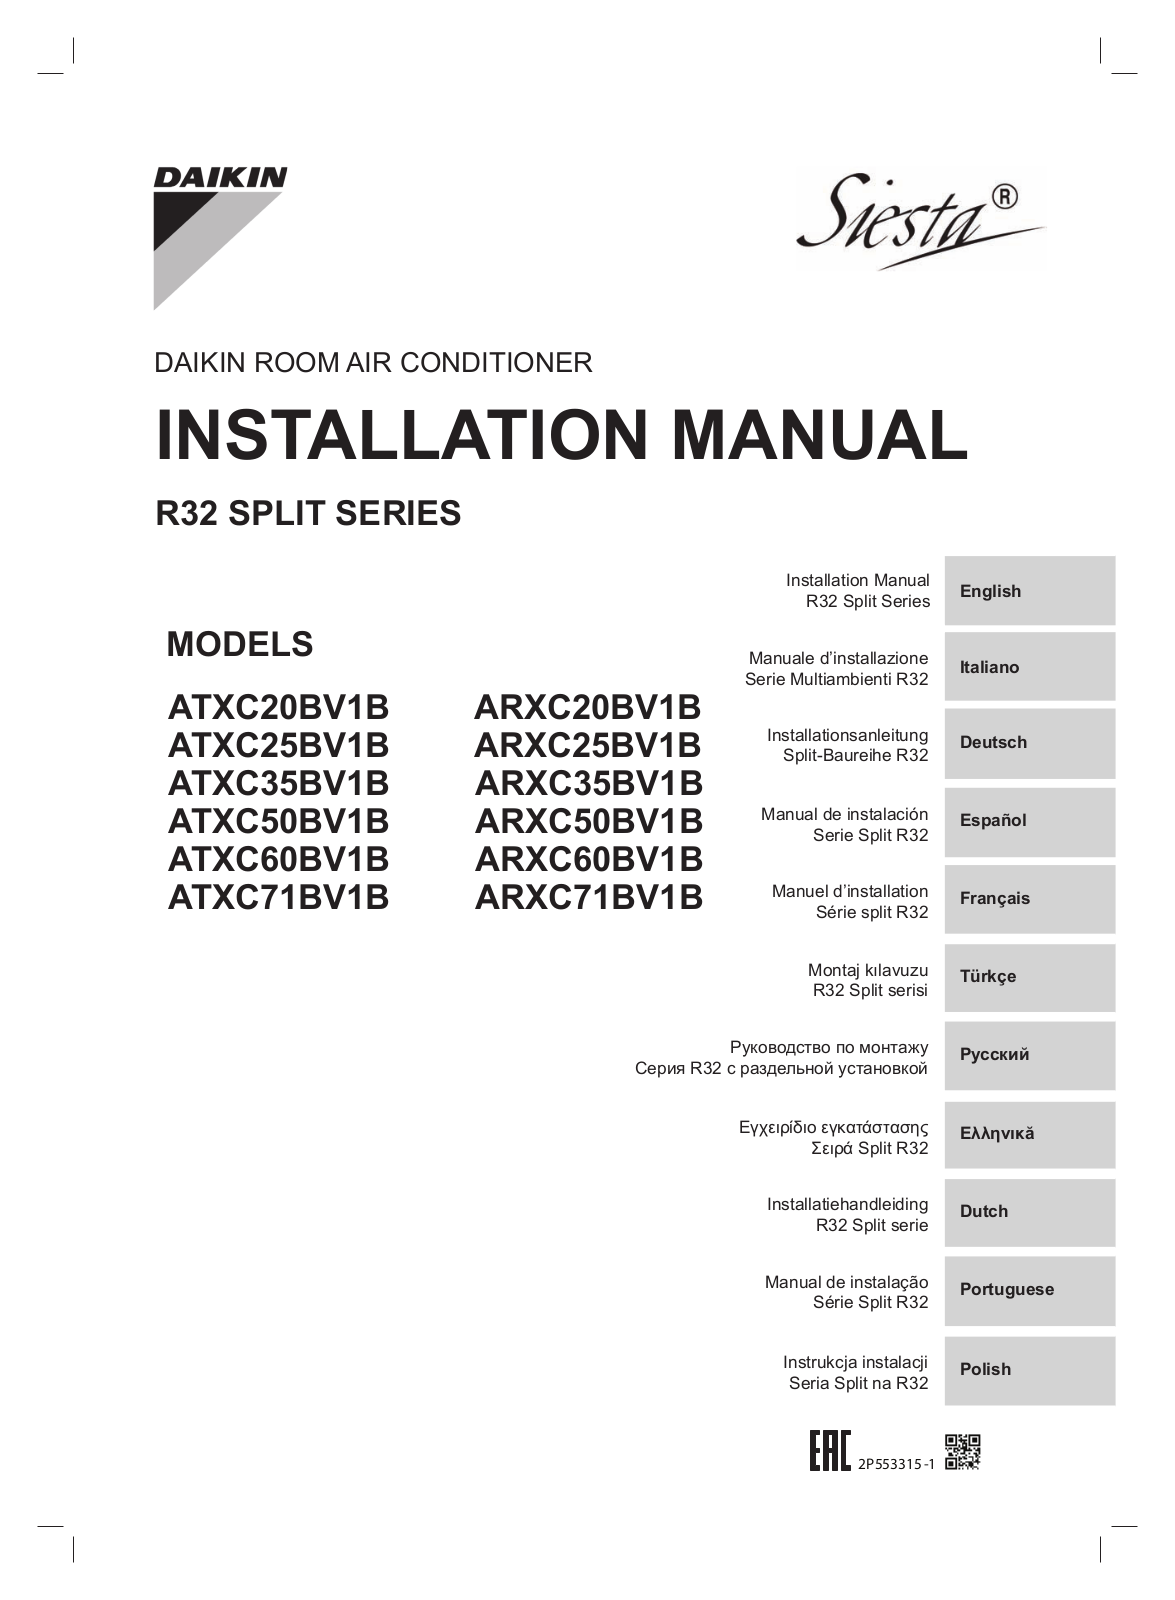 Daikin ATXC20BV1B, ARXC20BV1B, ATXC25BV1B, ARXC25BV1B, ATXC35BV1B Installation manuals